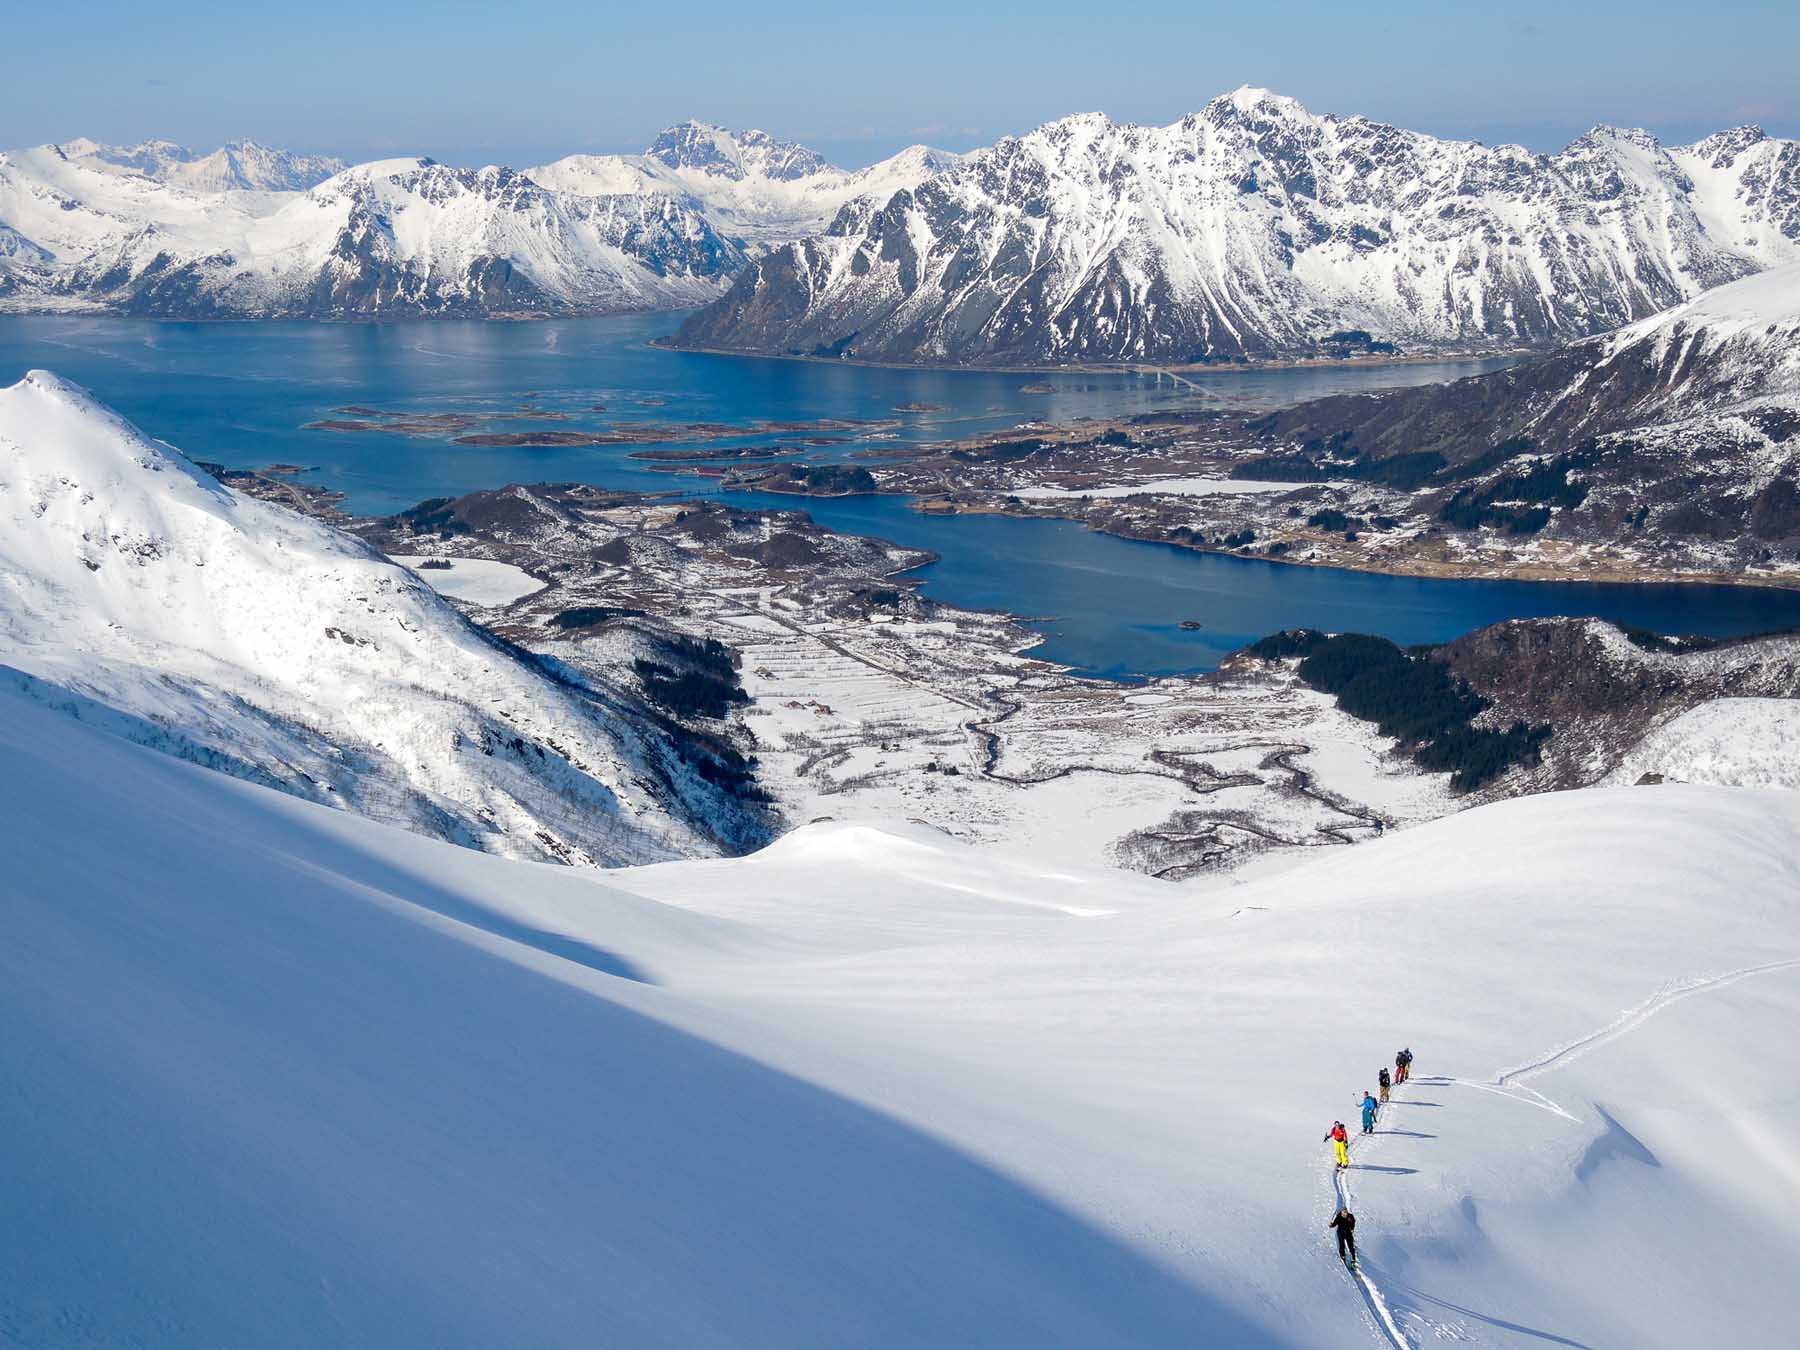 Lofoten snowboard terrain